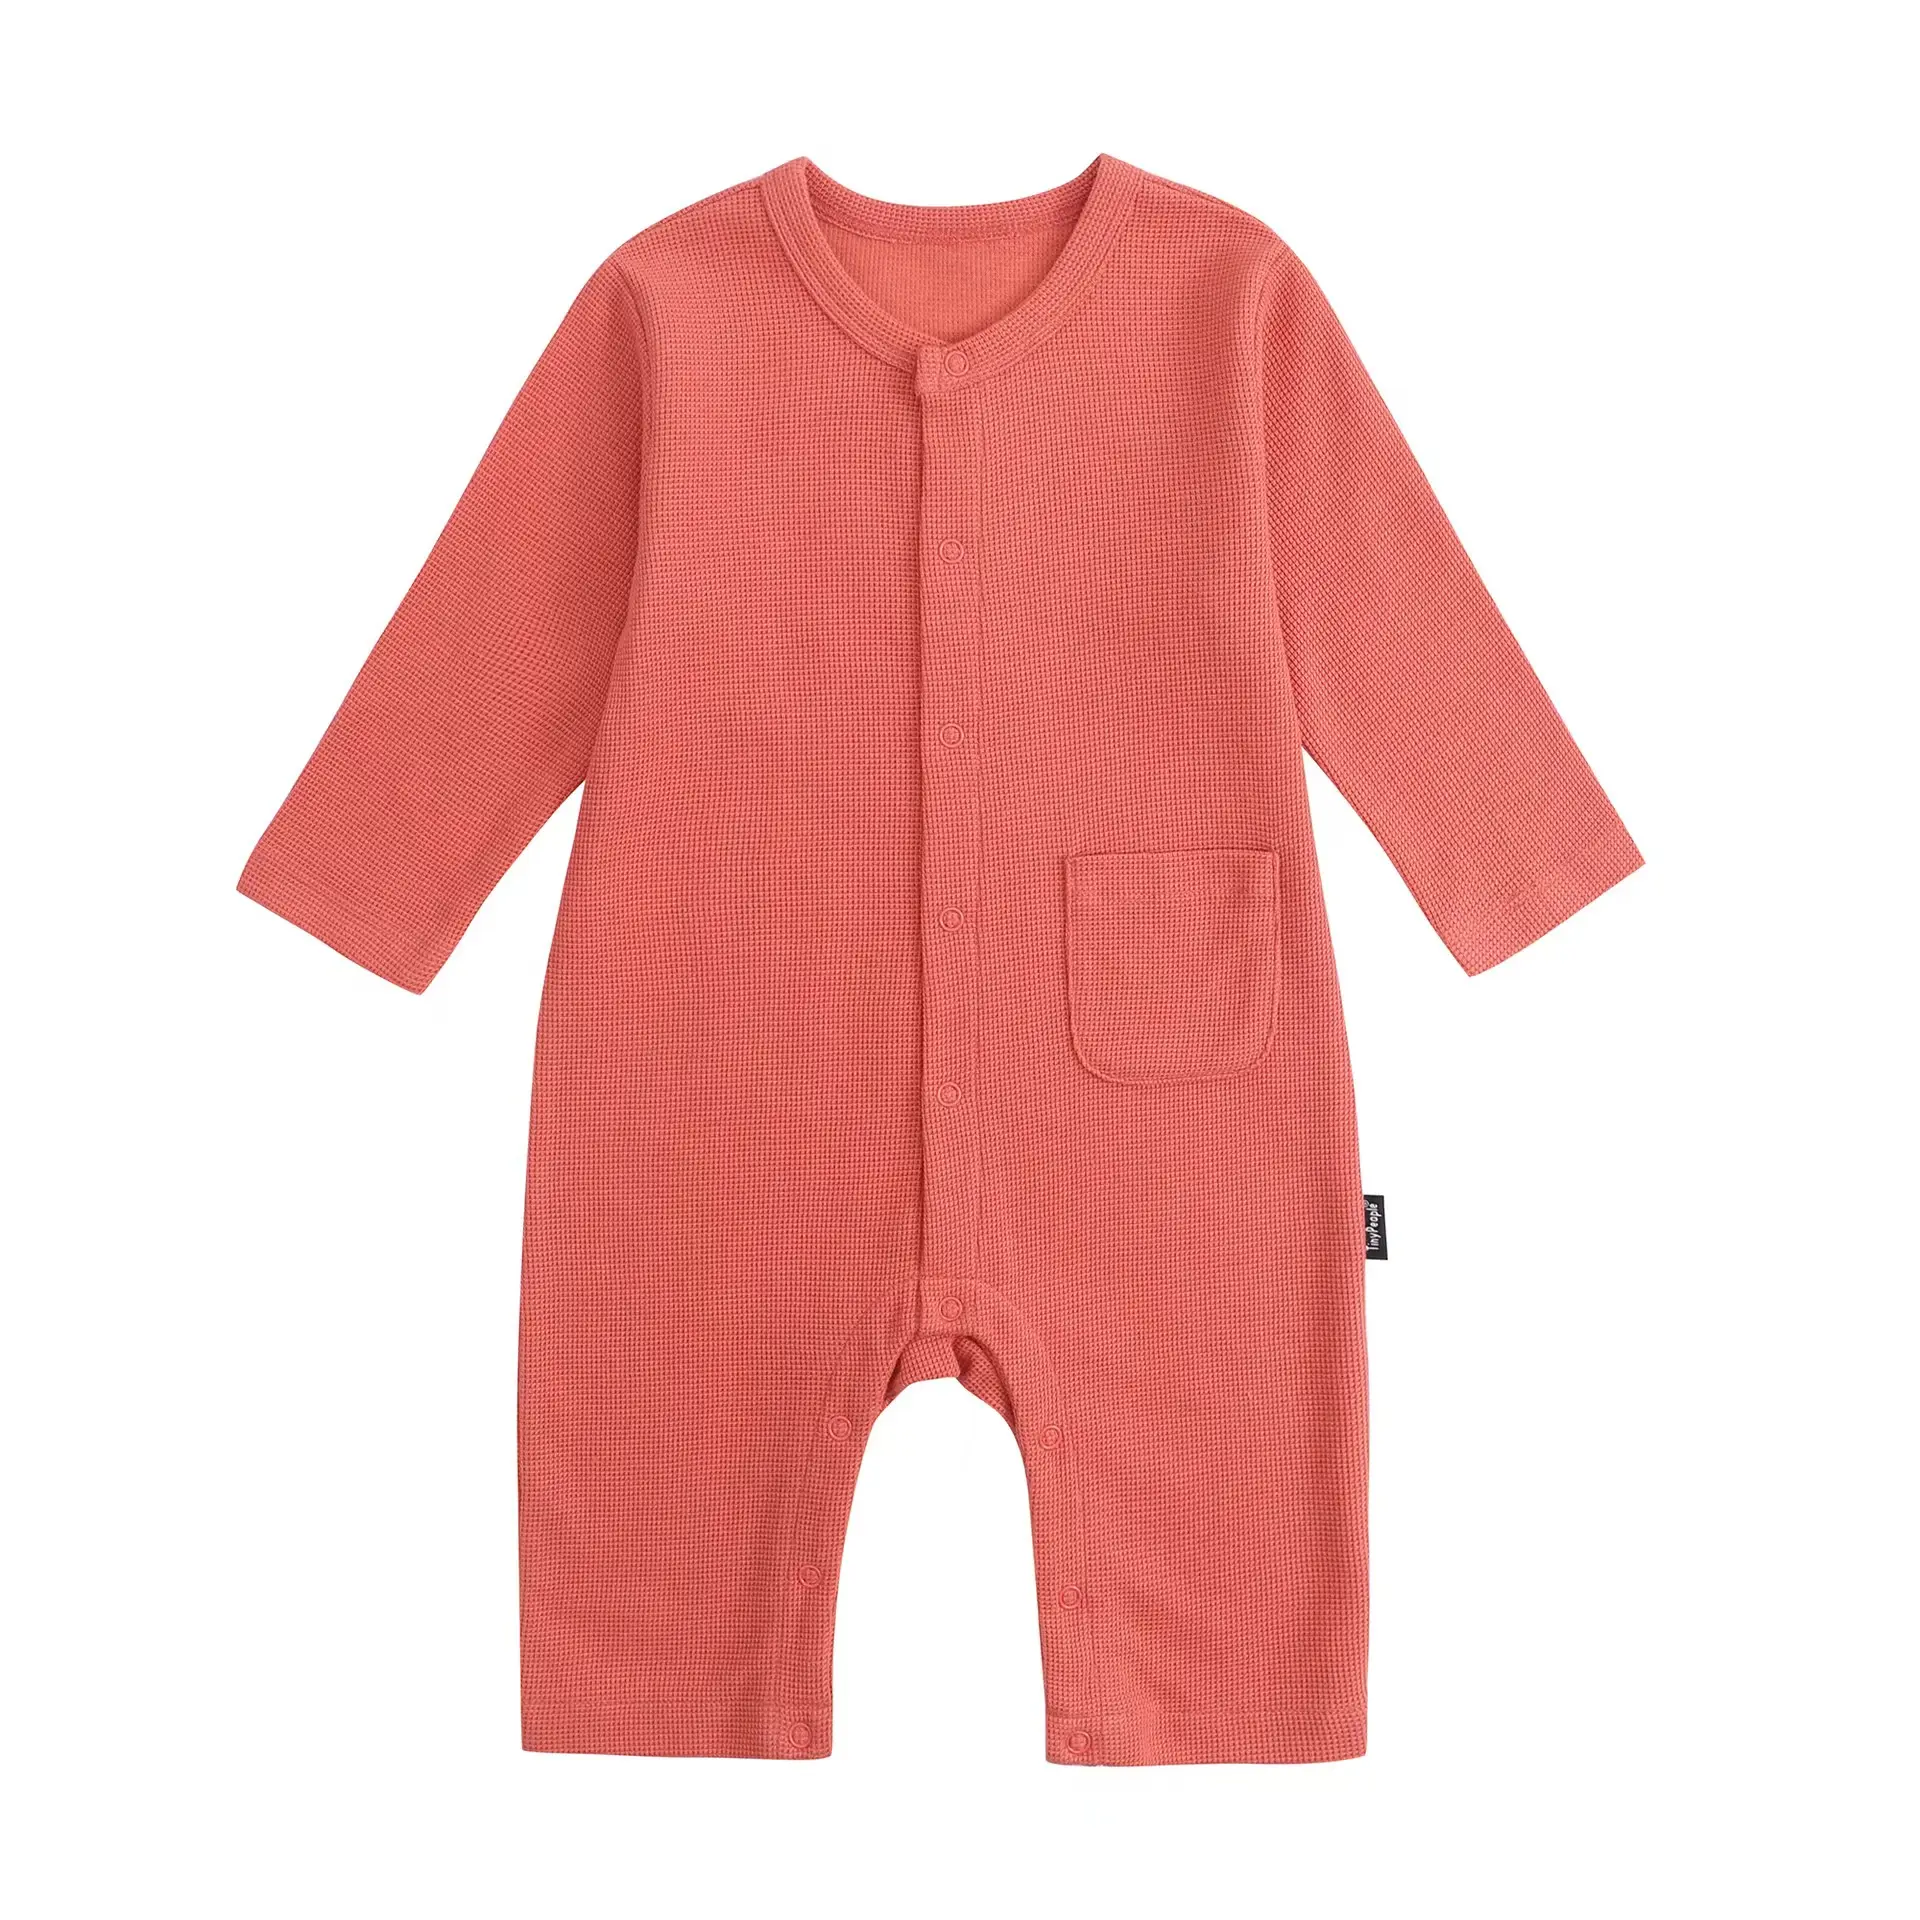 Toko jual grosir baju katun bayi musim panas baju bayi murah baju romper bayi